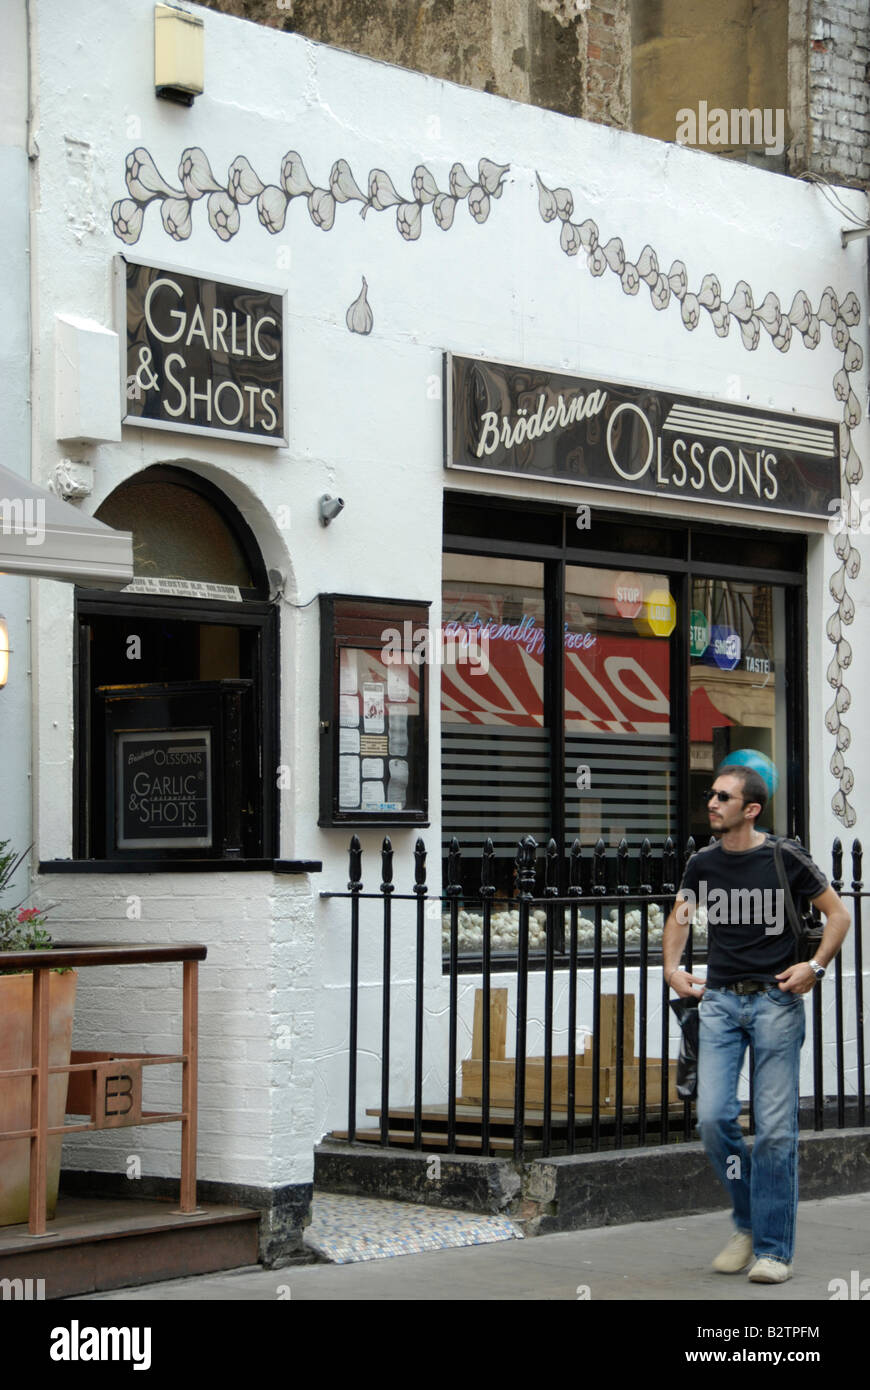 Knoblauch und Schüsse schwedische Restaurant in Greek Street, Soho, London, England Stockfoto